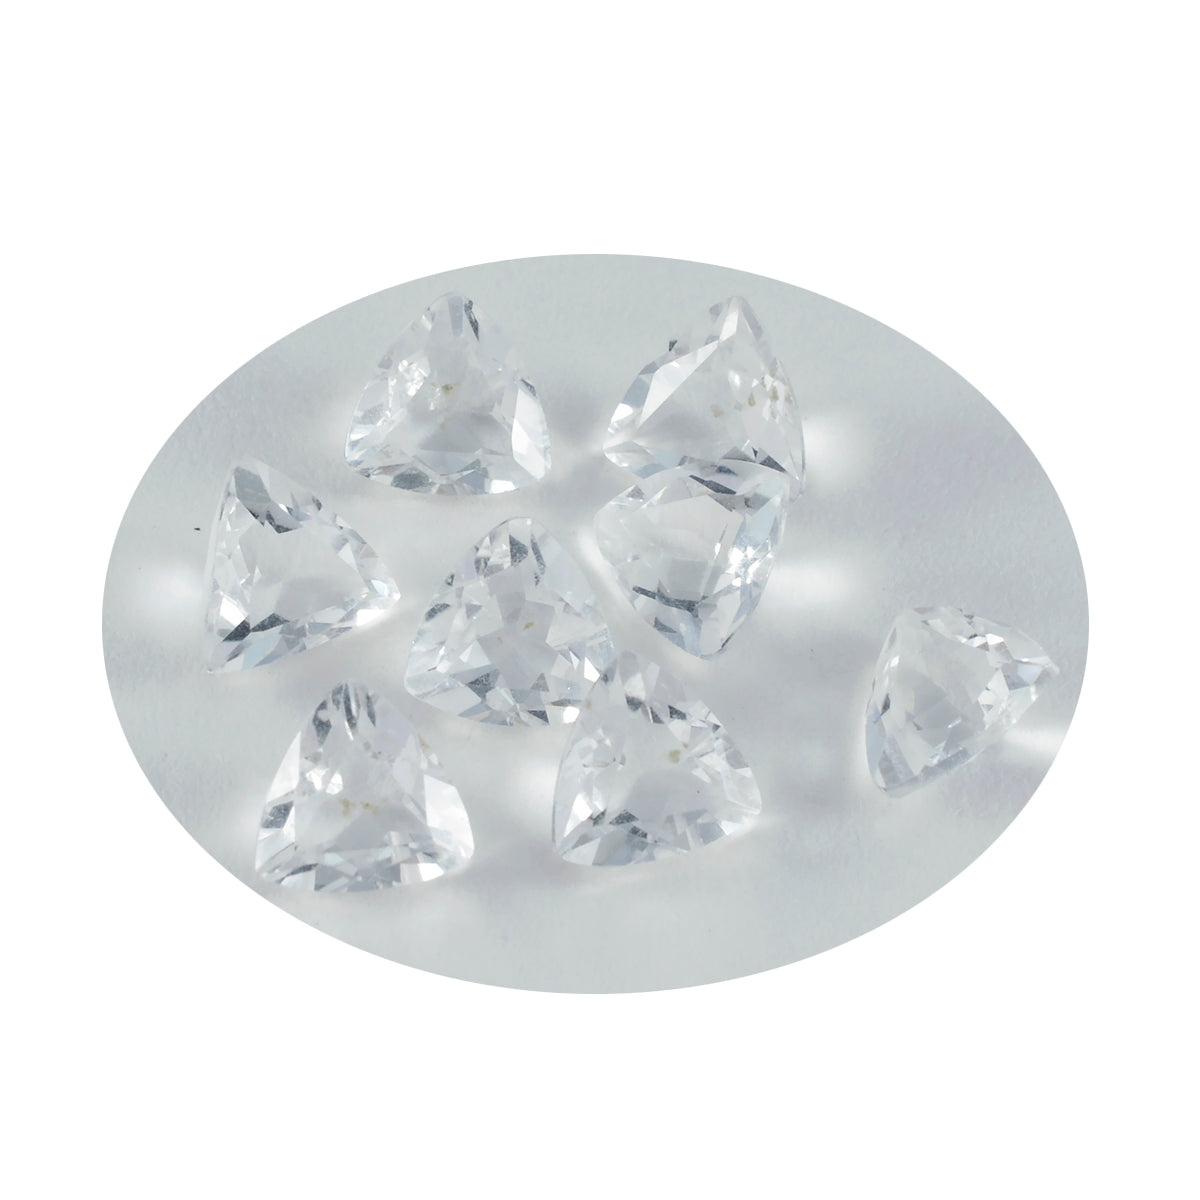 Riyogems 1 Stück weißer Kristallquarz, facettiert, 9 x 9 mm, Billionenform, Schönheitsqualität, lose Edelsteine